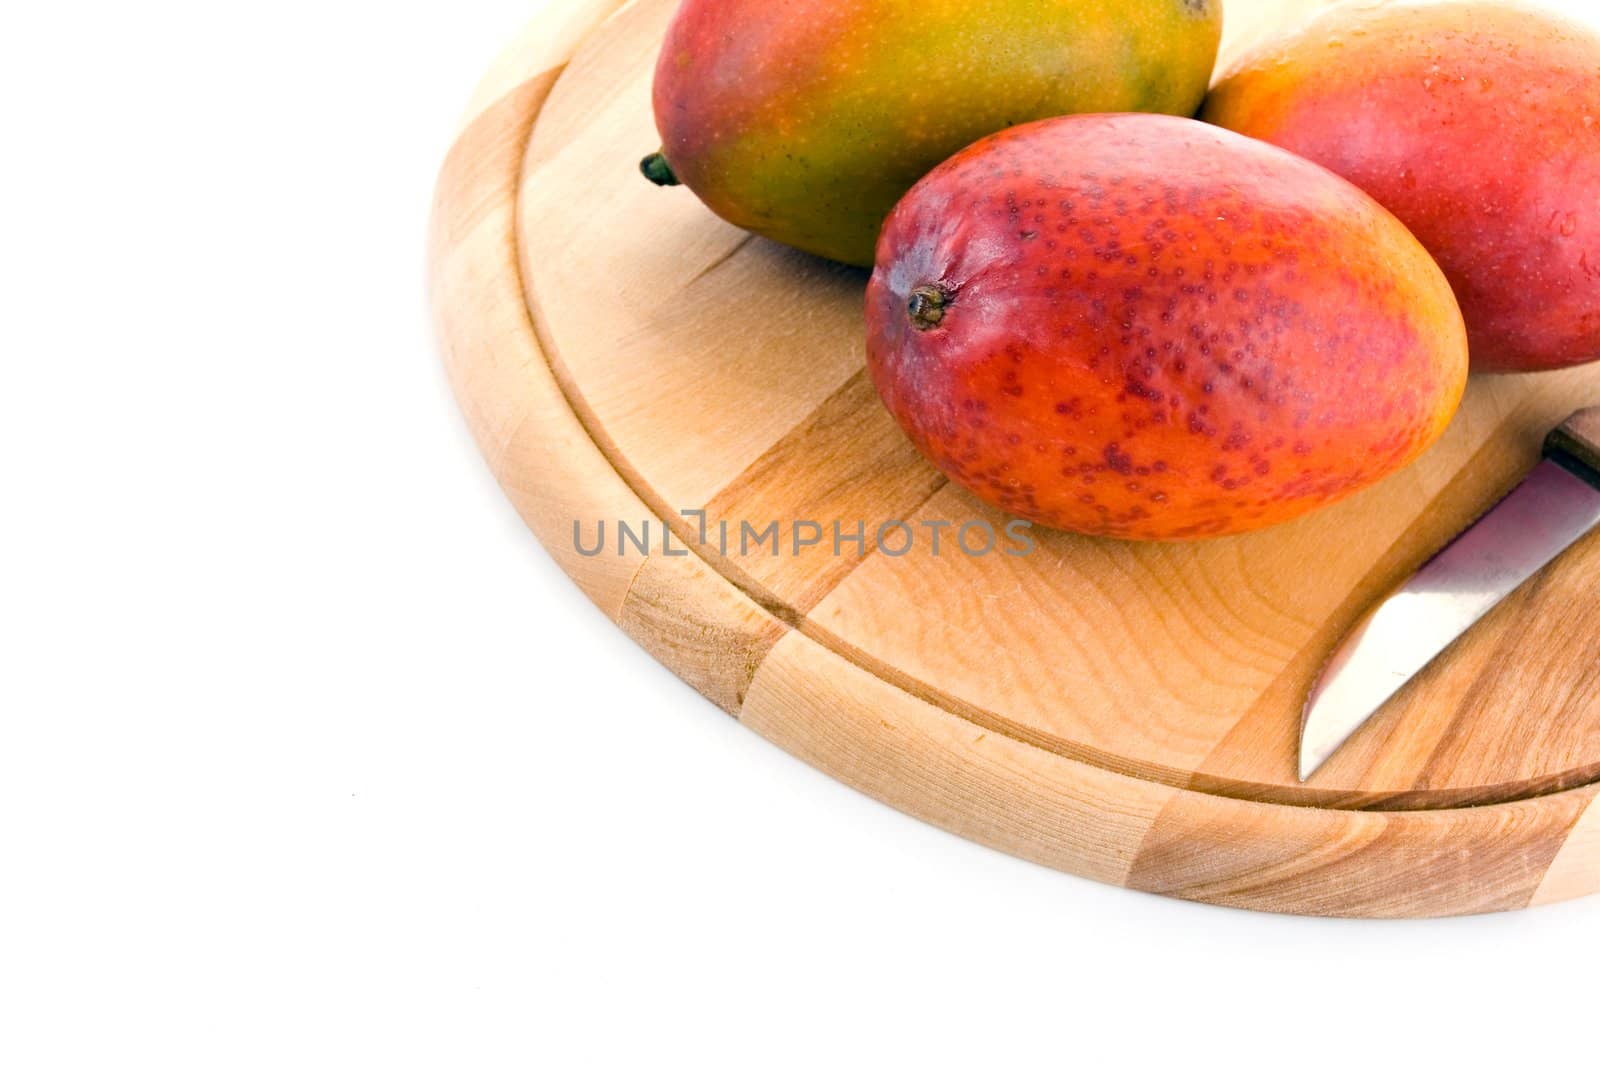 Juicy mangoes by Vladimir